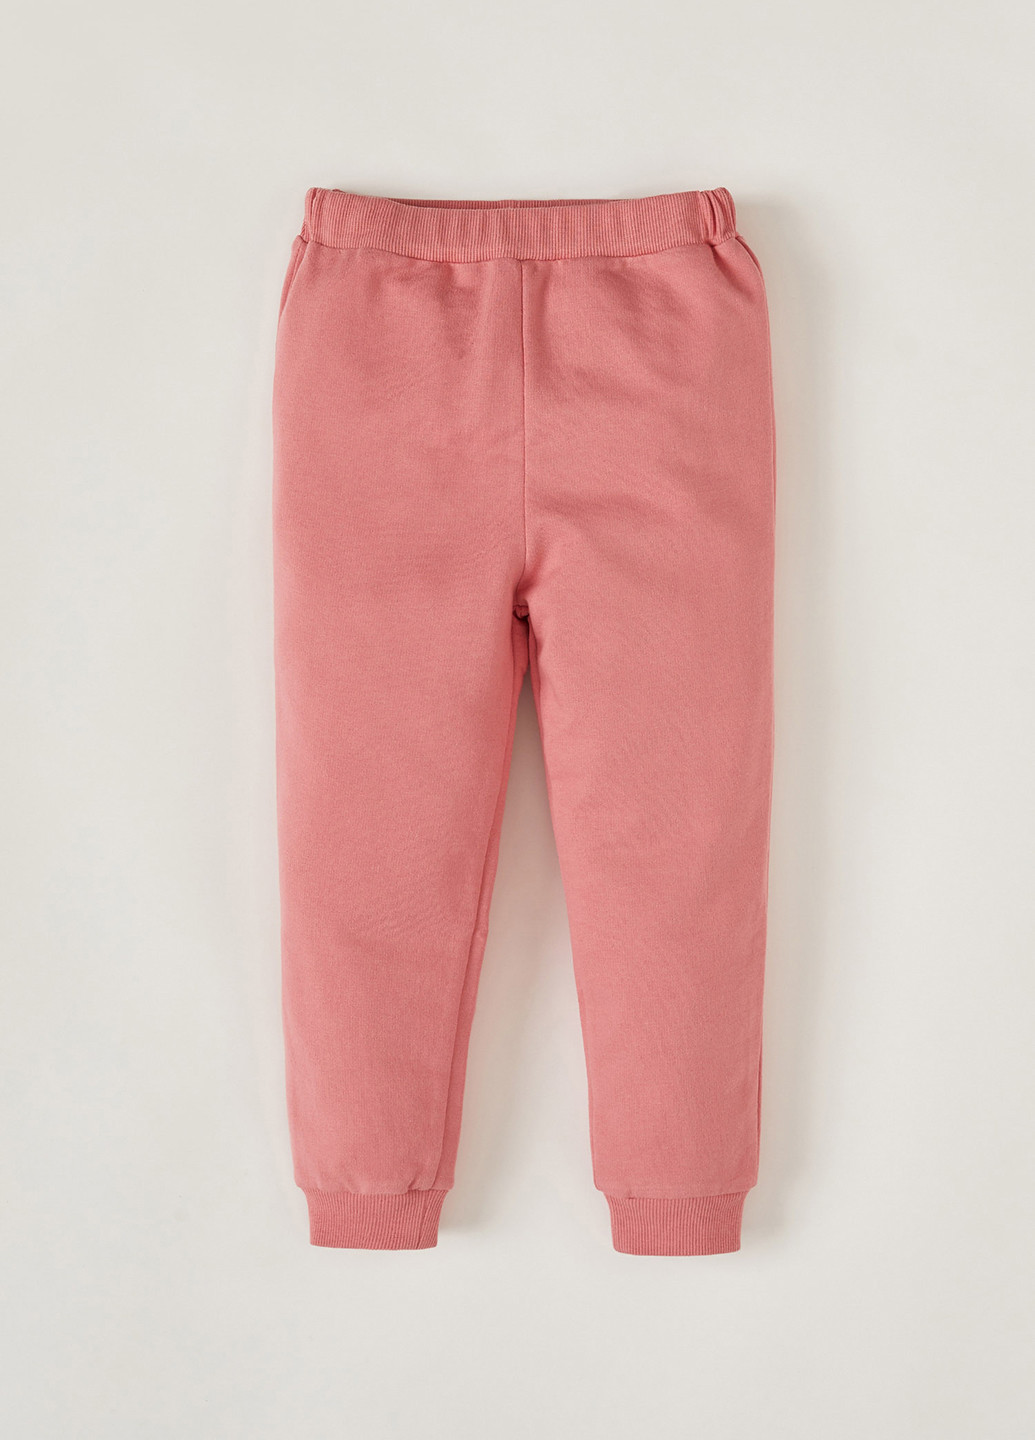 Костюм(реглан, брюки) DeFacto брючный розовый спортивный трикотаж, хлопок, полиэстер